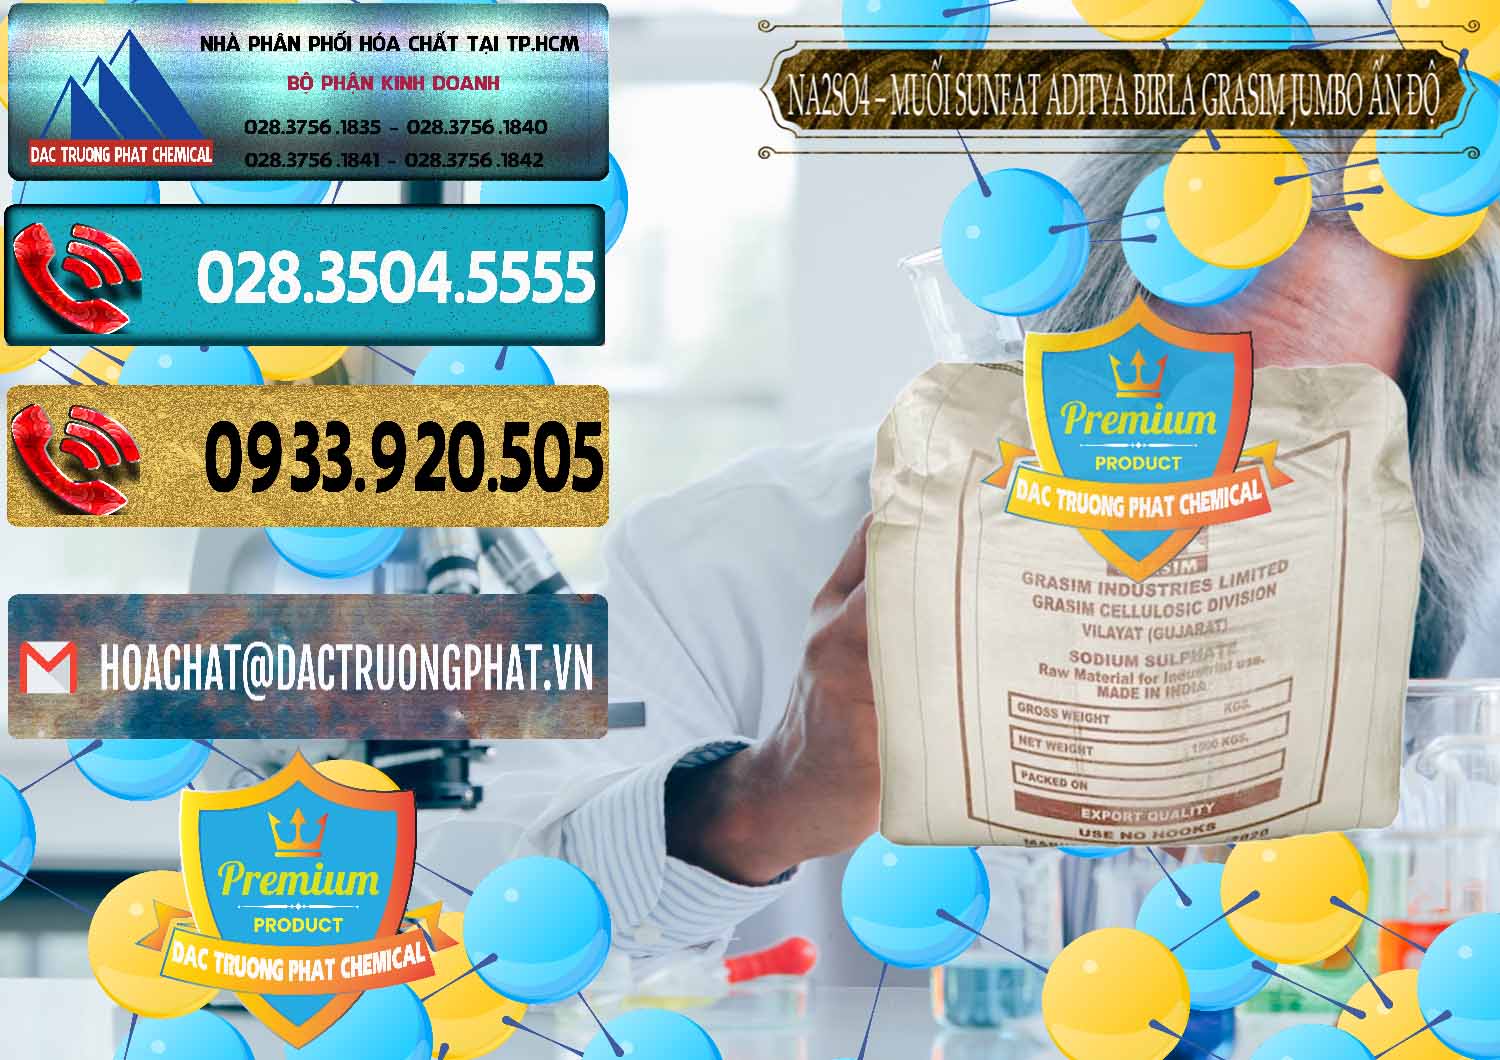 Chuyên cung cấp - bán Sodium Sulphate - Muối Sunfat Na2SO4 Jumbo Bành Aditya Birla Grasim Ấn Độ India - 0357 - Cty chuyên nhập khẩu ( phân phối ) hóa chất tại TP.HCM - hoachatdetnhuom.com